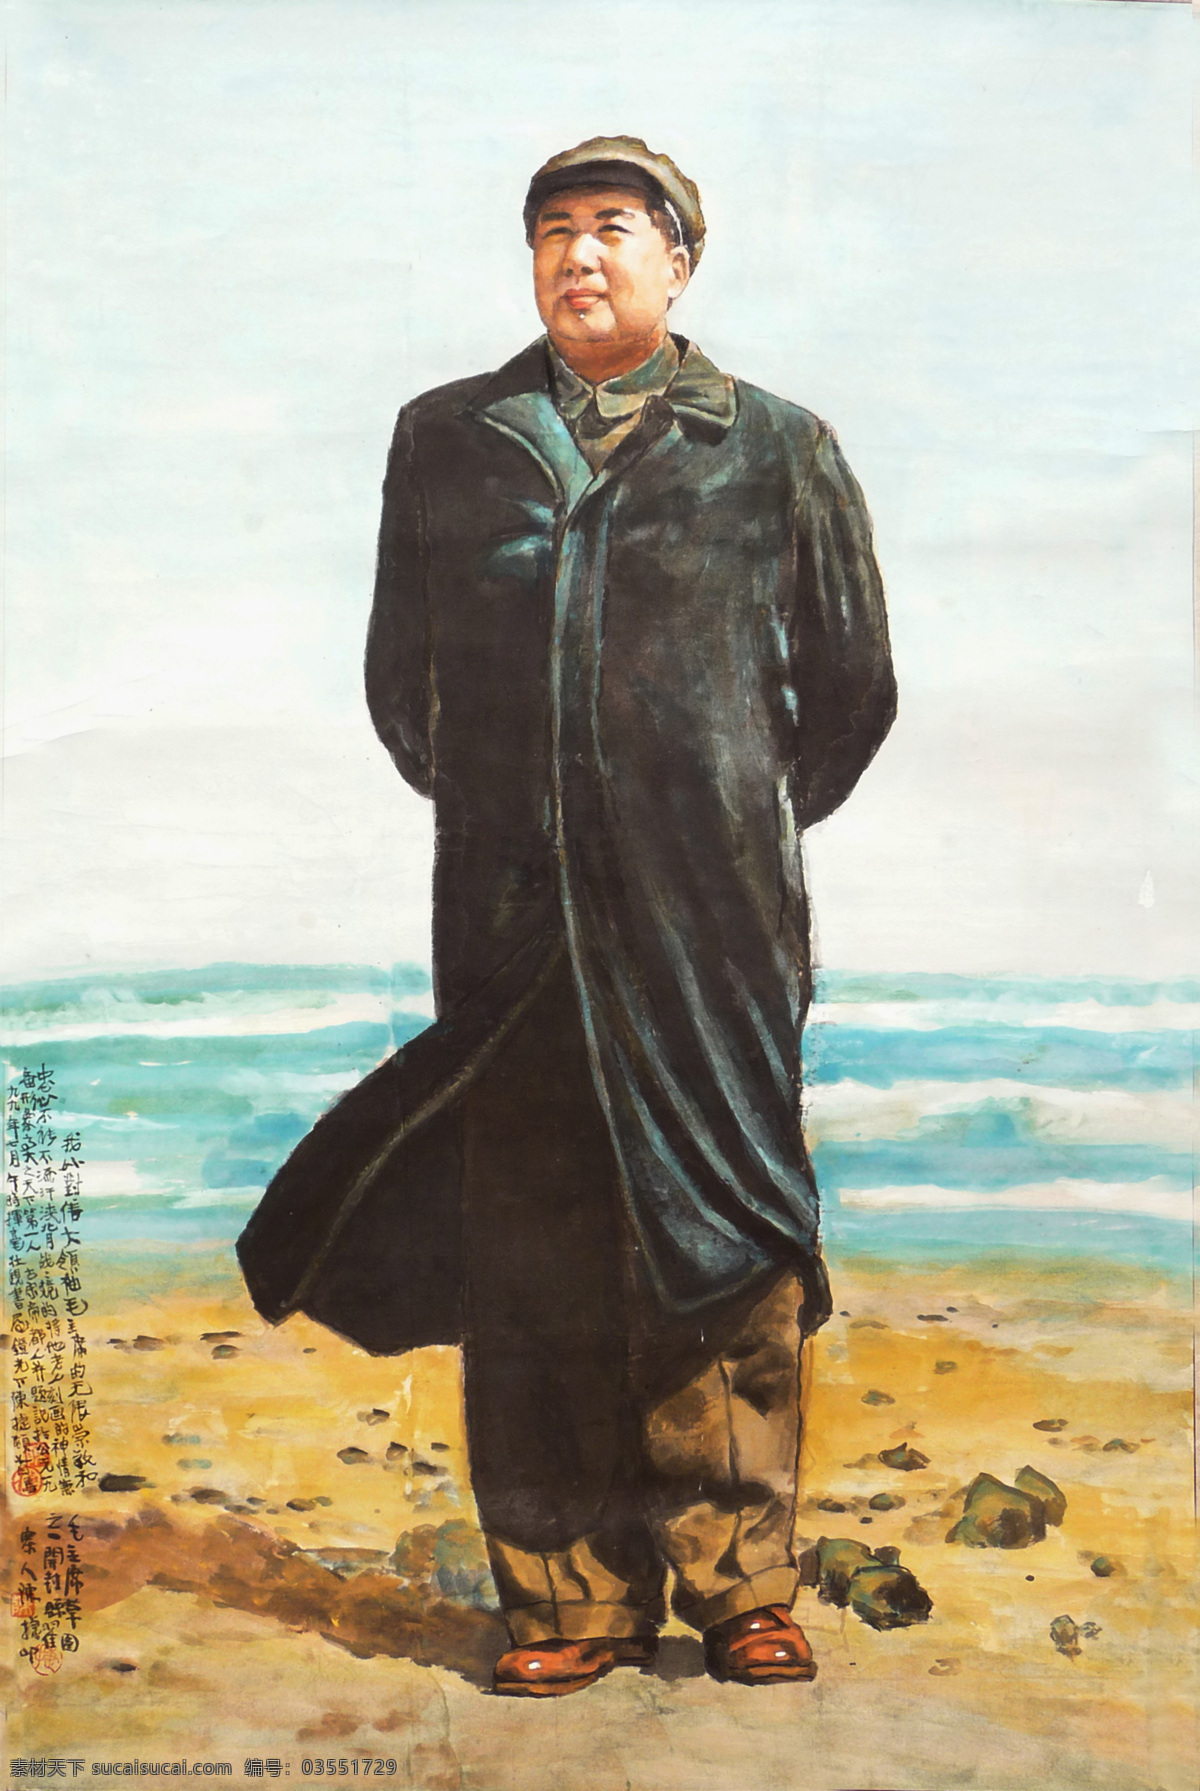 中国画 毛泽东 主席 毛主席 国画人物 绘画书法 文化艺术